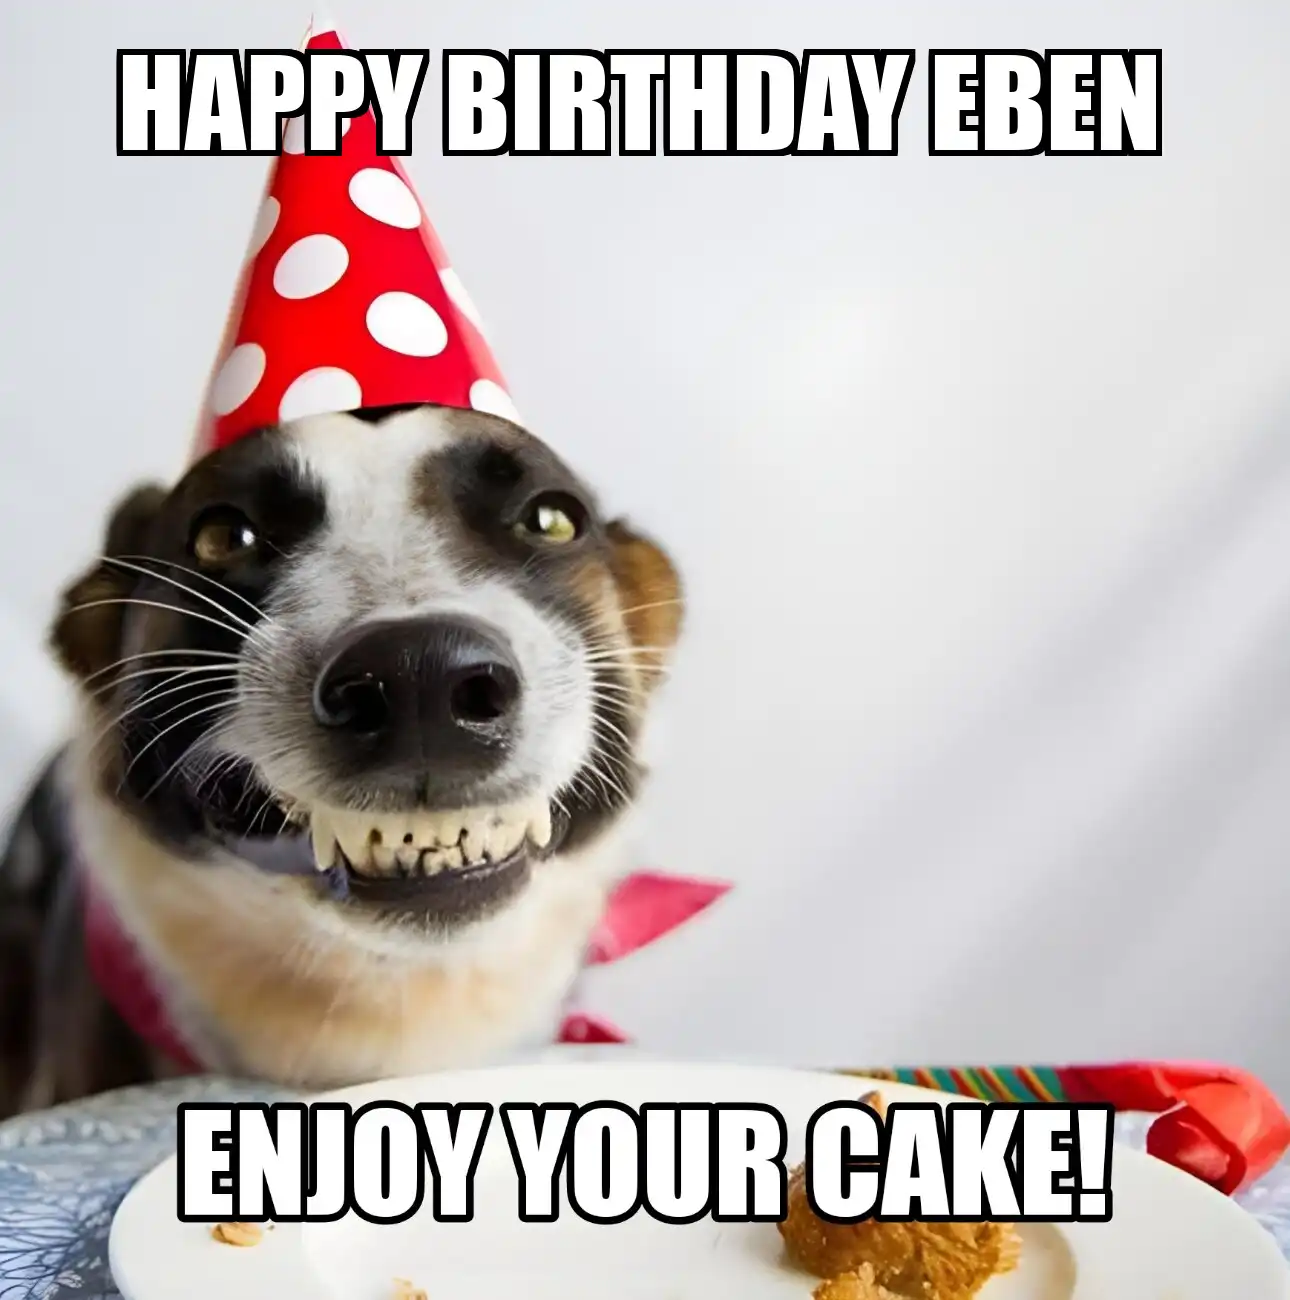 Happy Birthday Eben Enjoy Your Cake Dog Meme